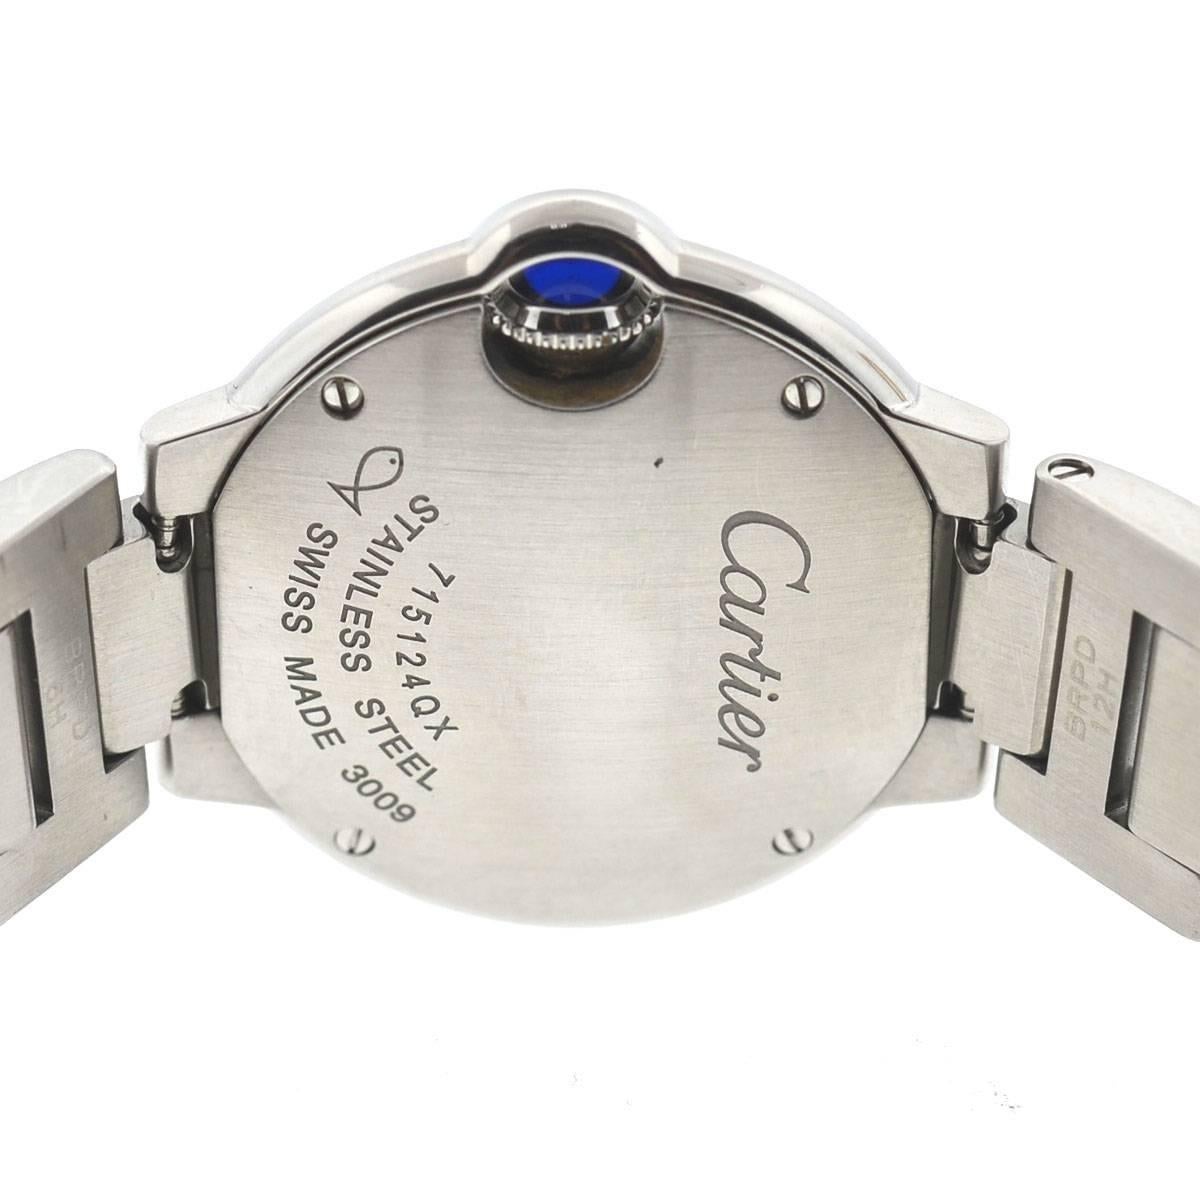 cartier 209409nx watch